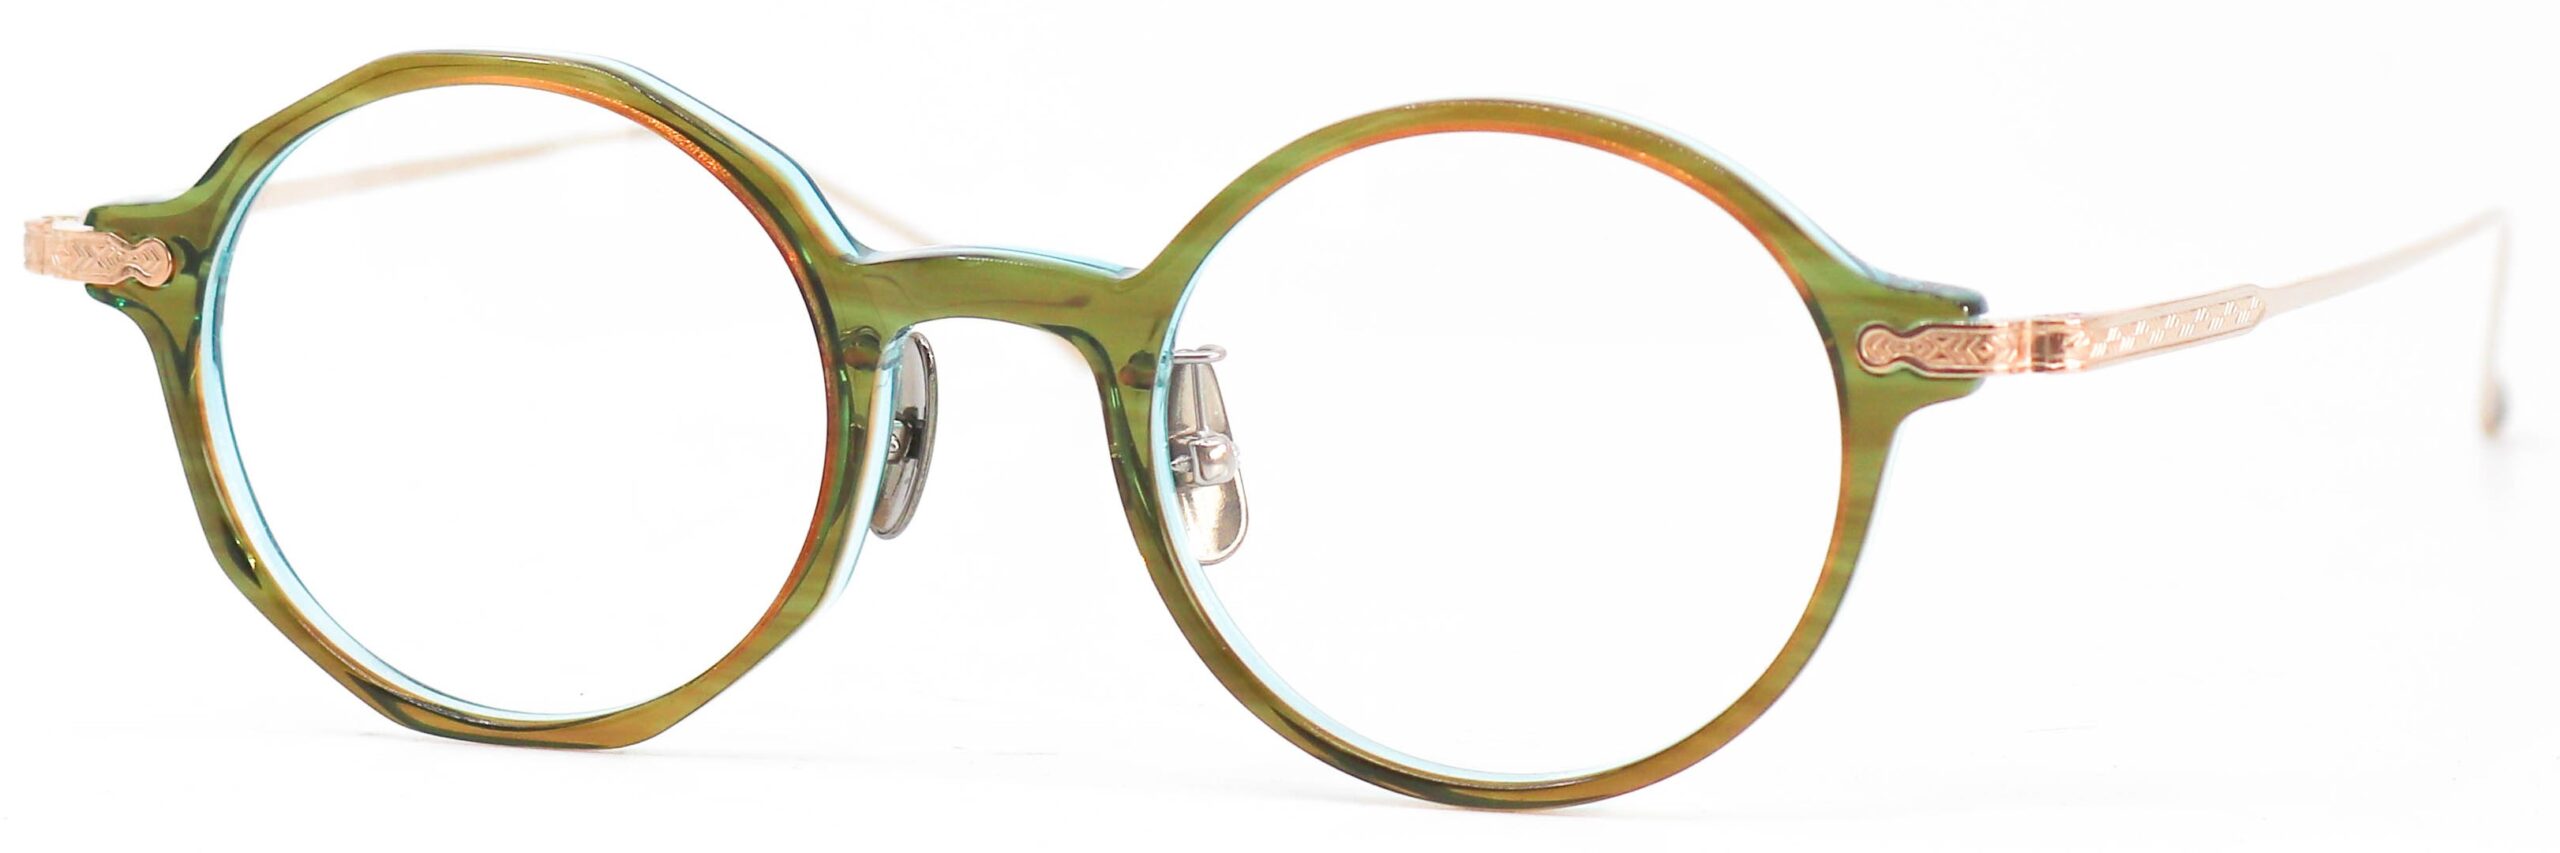 眼鏡のカラータイプC-3 Brown-Green/Gold